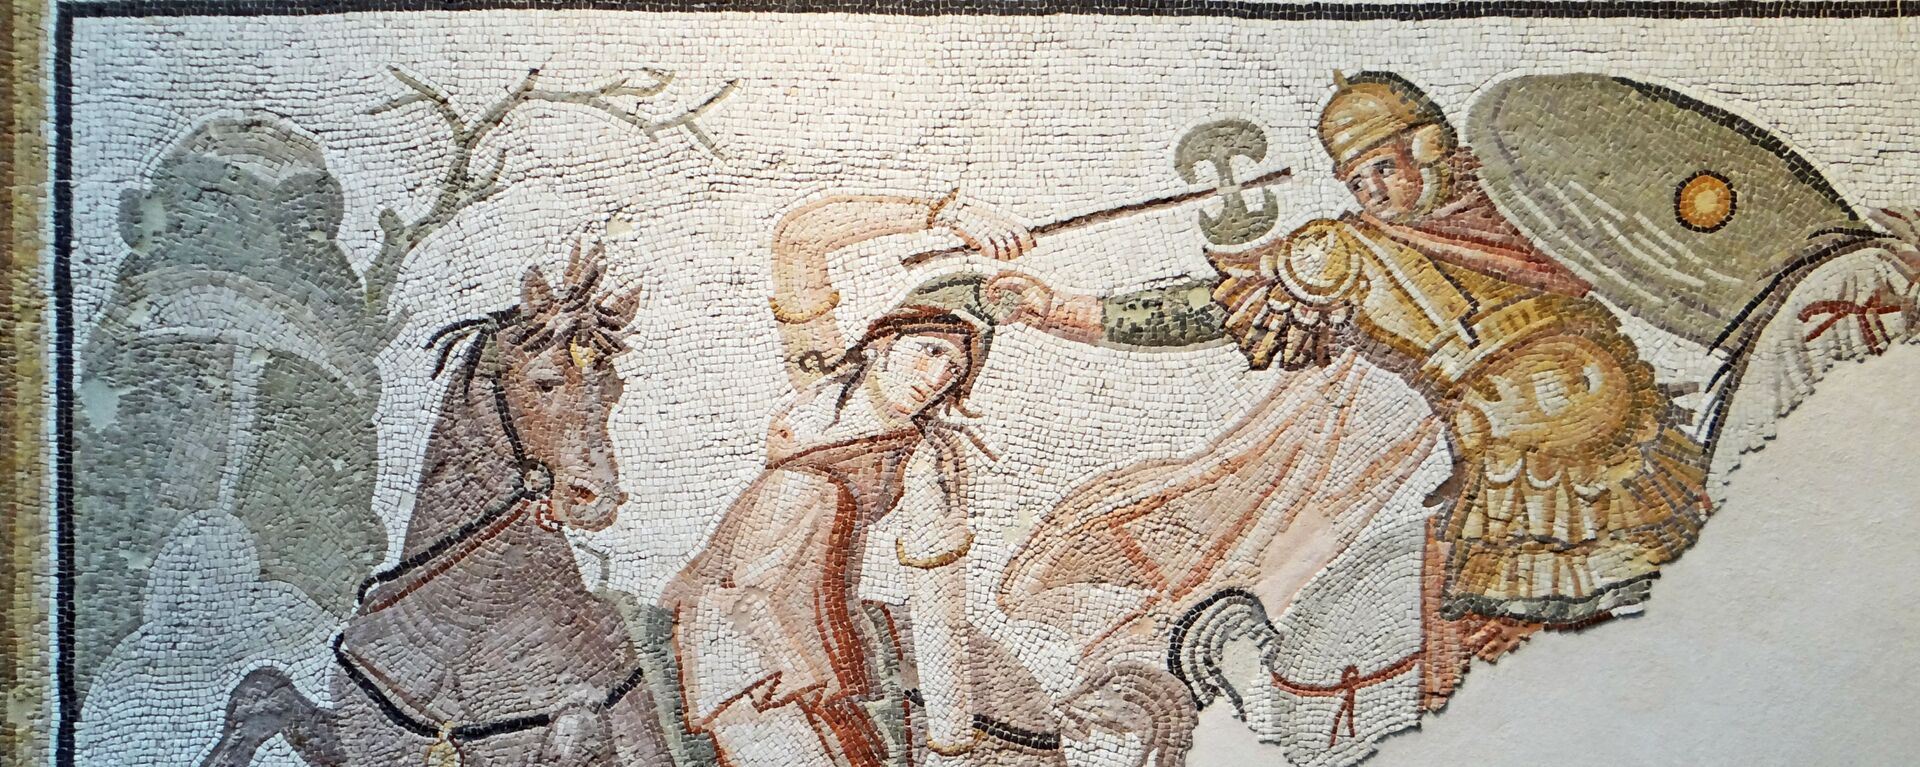 Un mosaico antiguo representando una guerrera amazónica en un combate - Sputnik Mundo, 1920, 07.02.2021